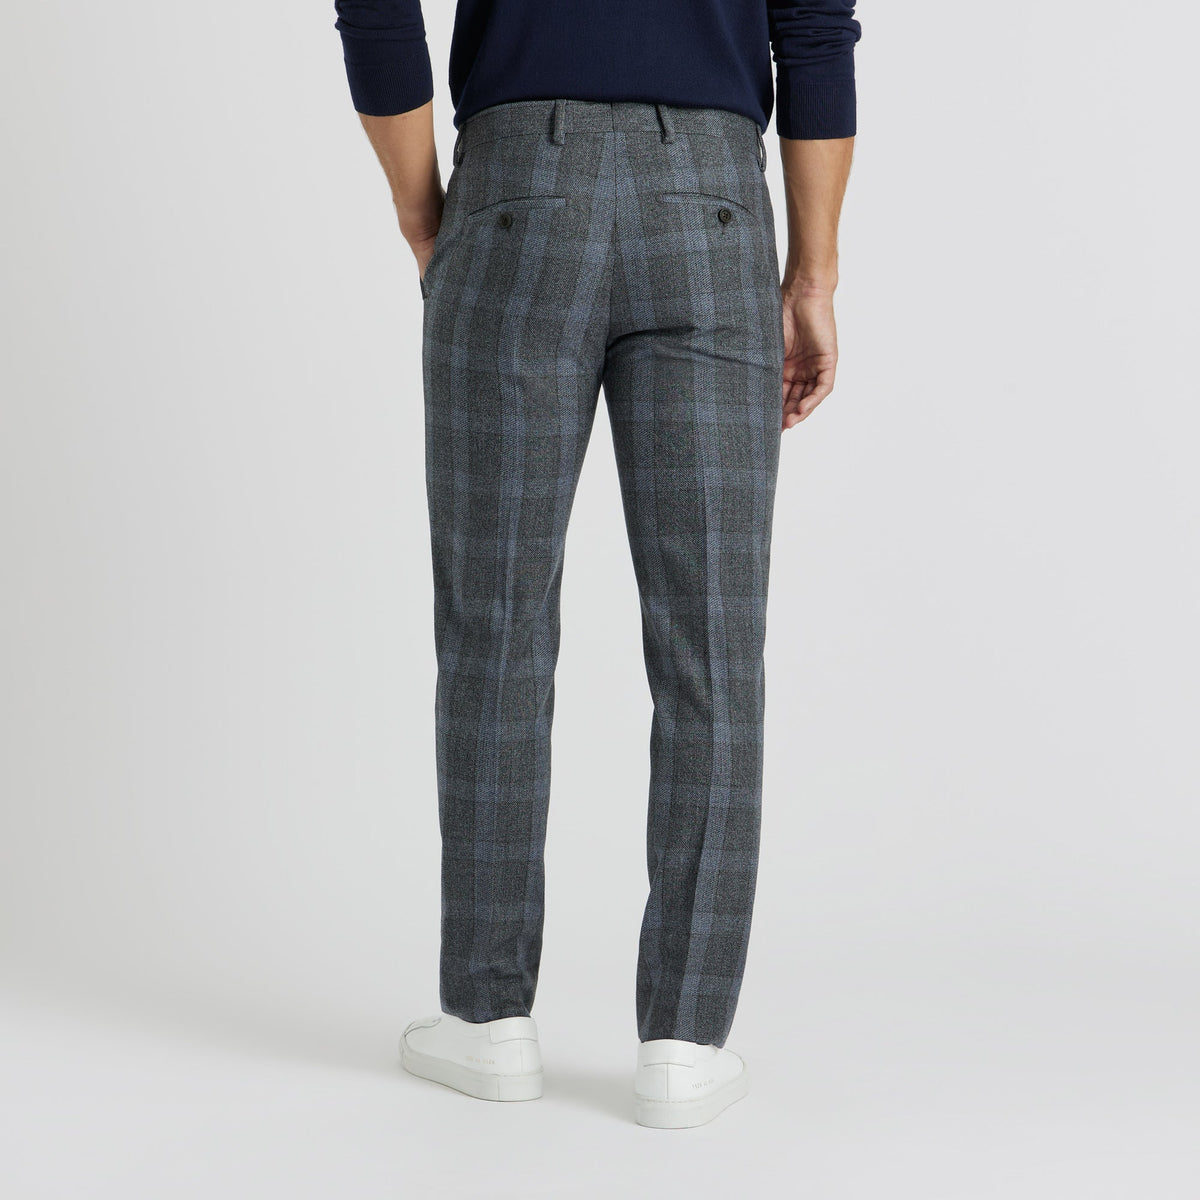 SPOKE Winter Smarts - Blue Grey Check Custom Fit Trousers - SPOKE